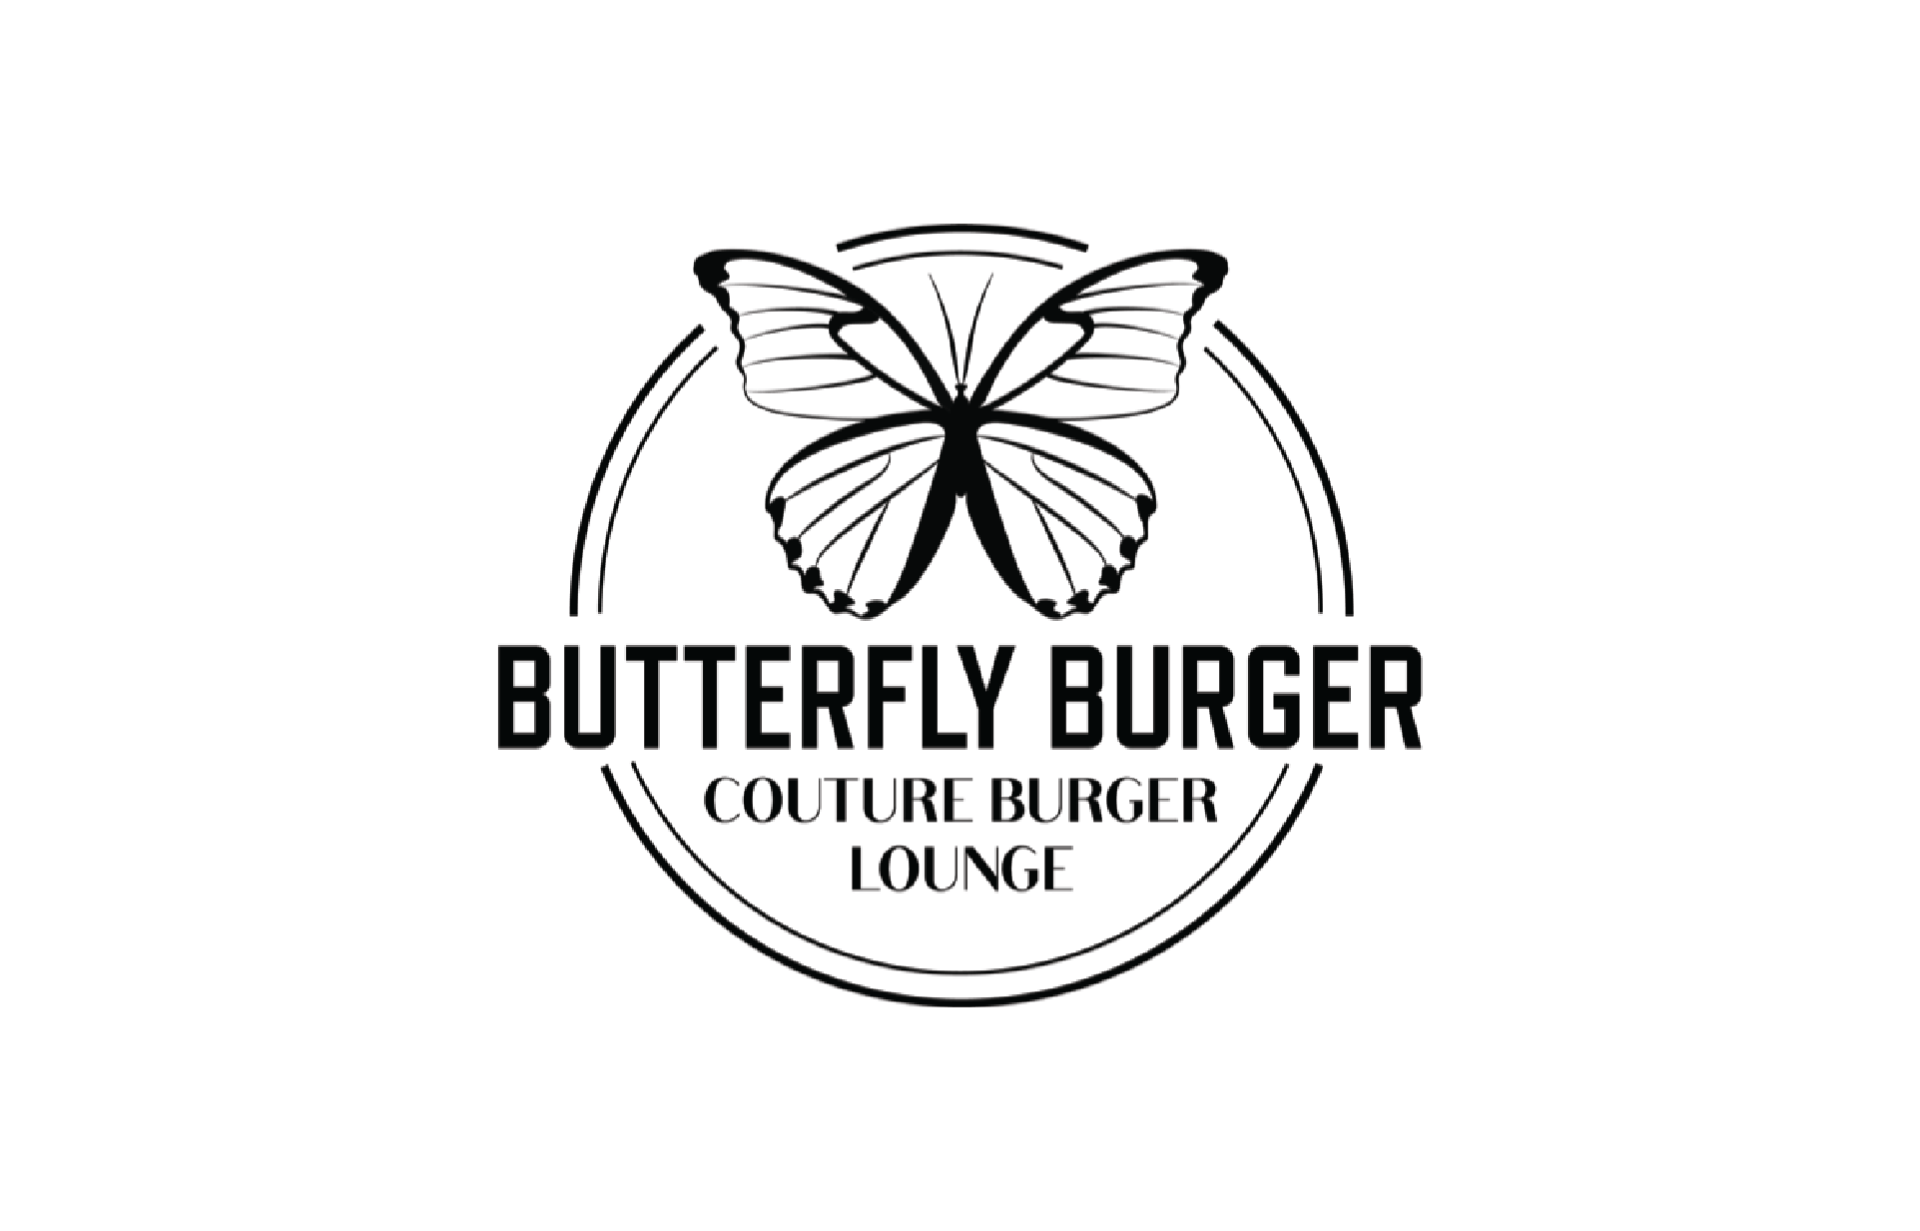 www.butterflyburger.com